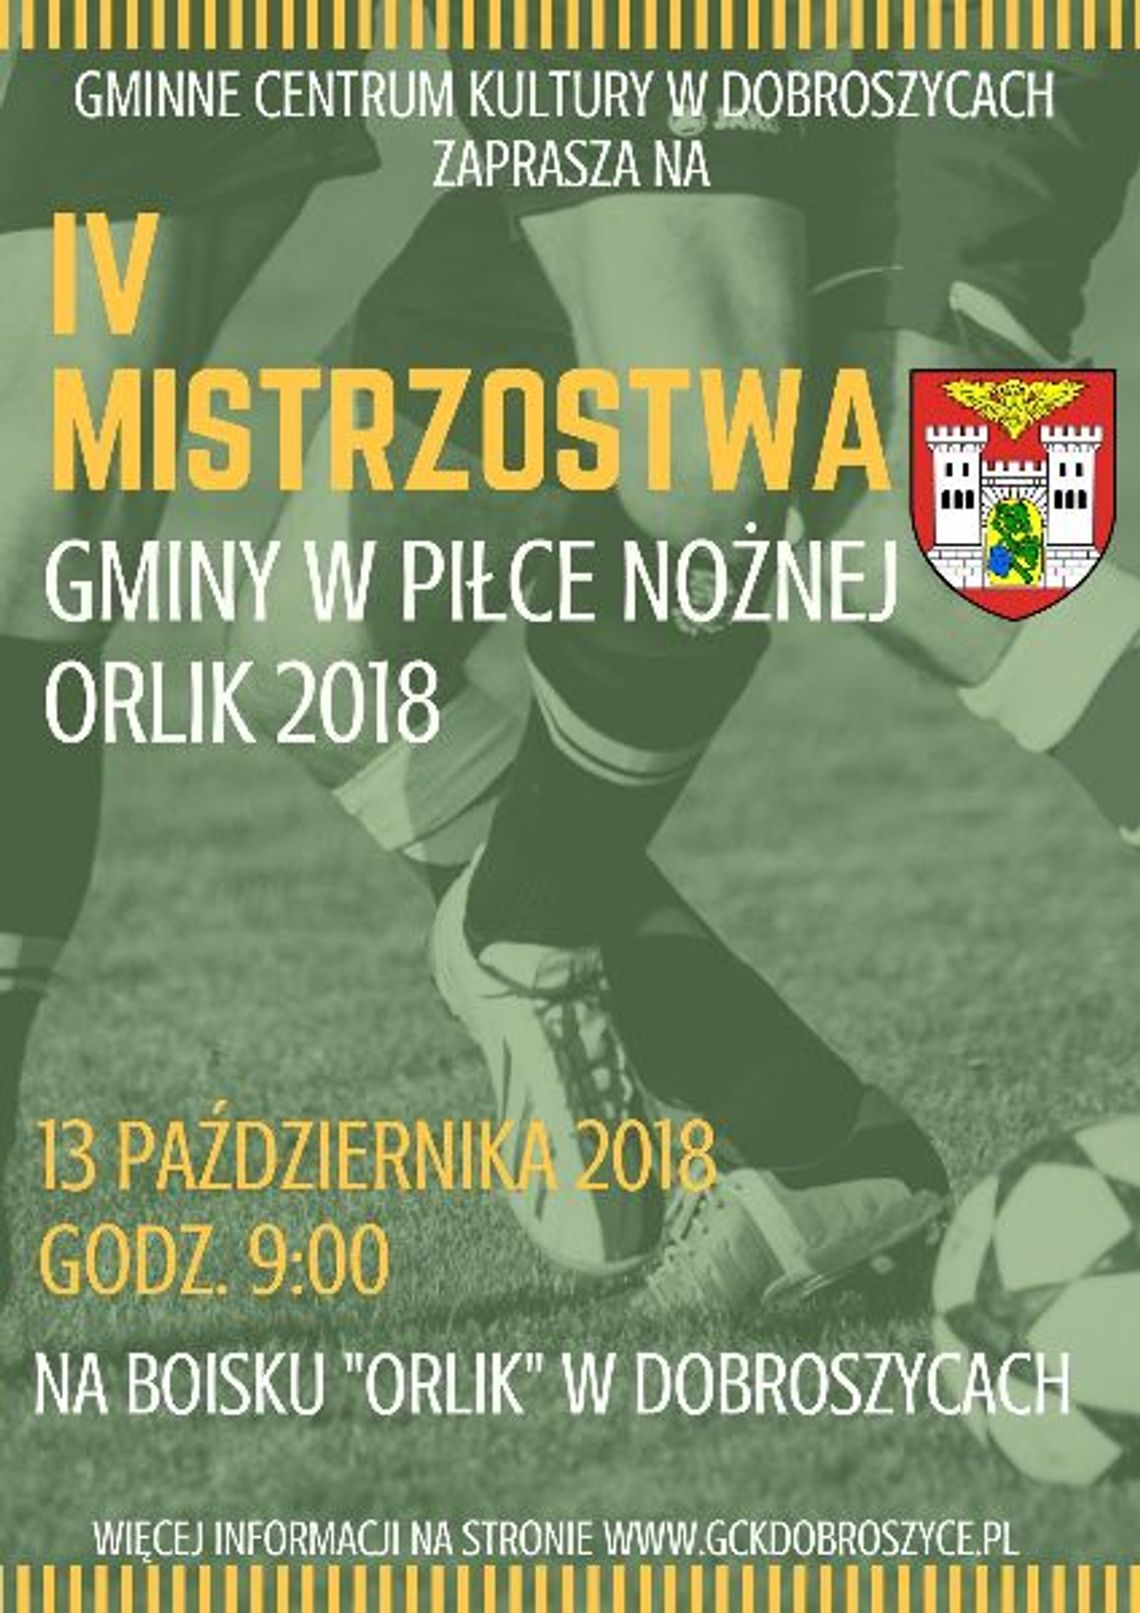 IV Mistrzostwa Gminy w Piłce Nożnej "ORLIK 2018"